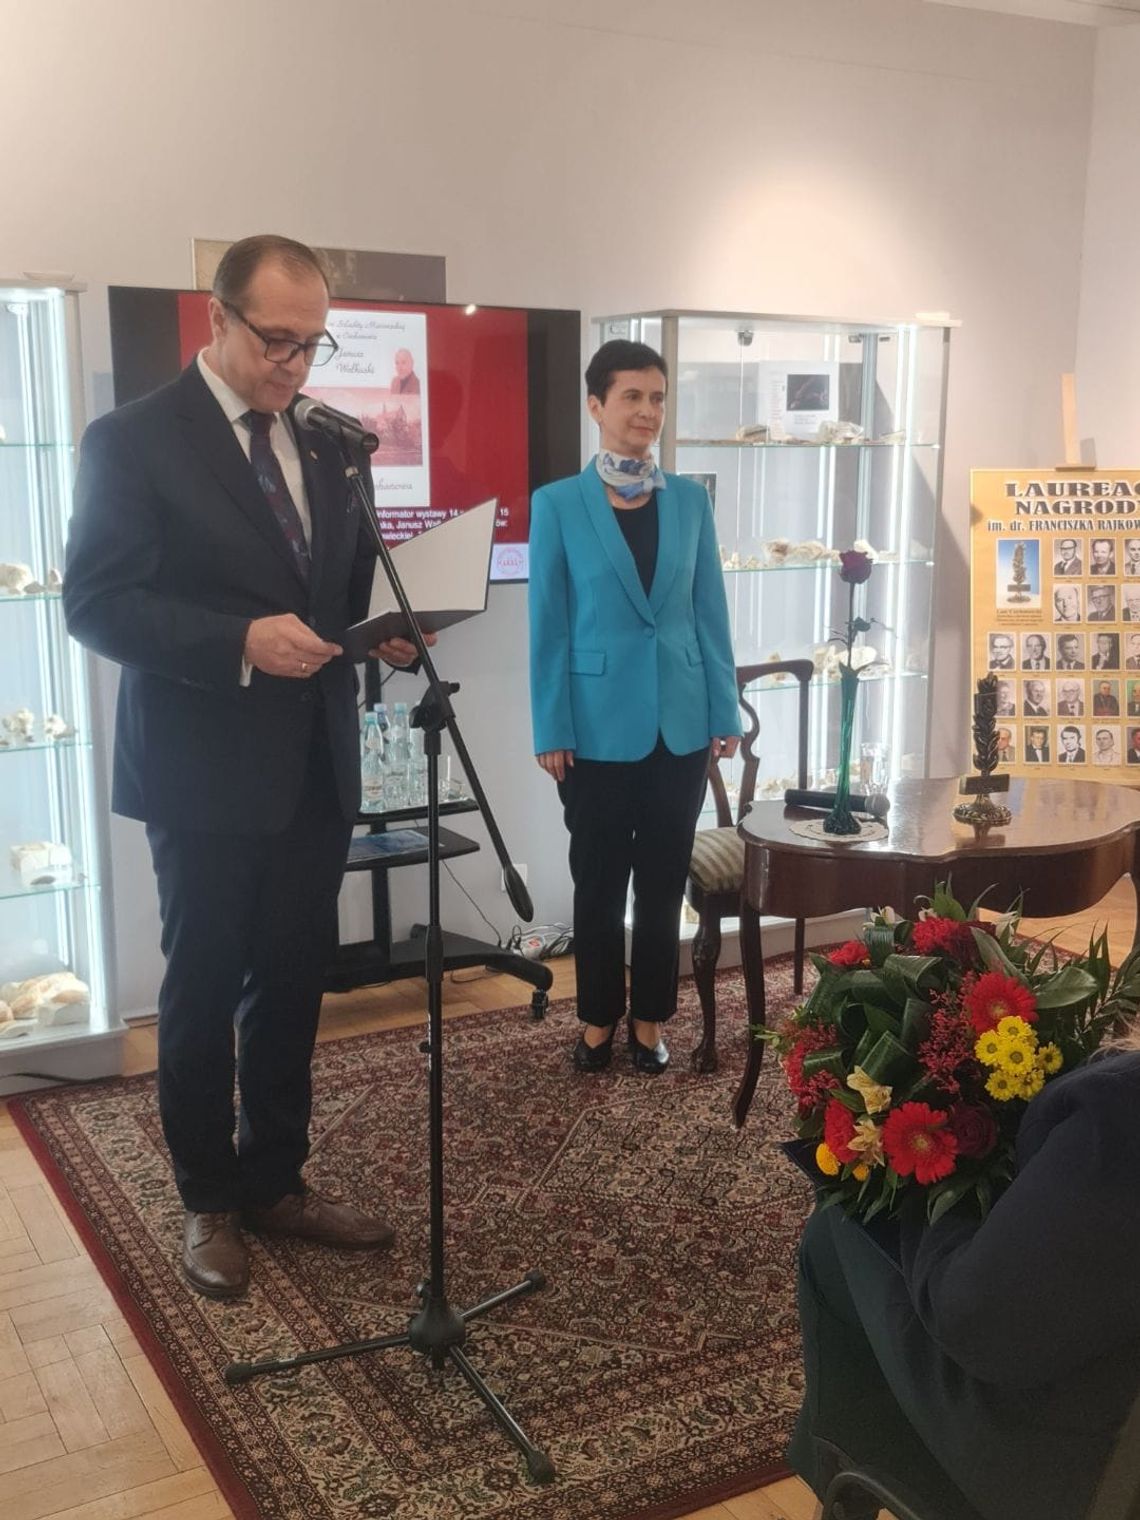 Tytuł Ciechanowianina Roku przyznany. Nagrodę otrzymała regionalistka, muzealnik dr Bogumiła Umińska